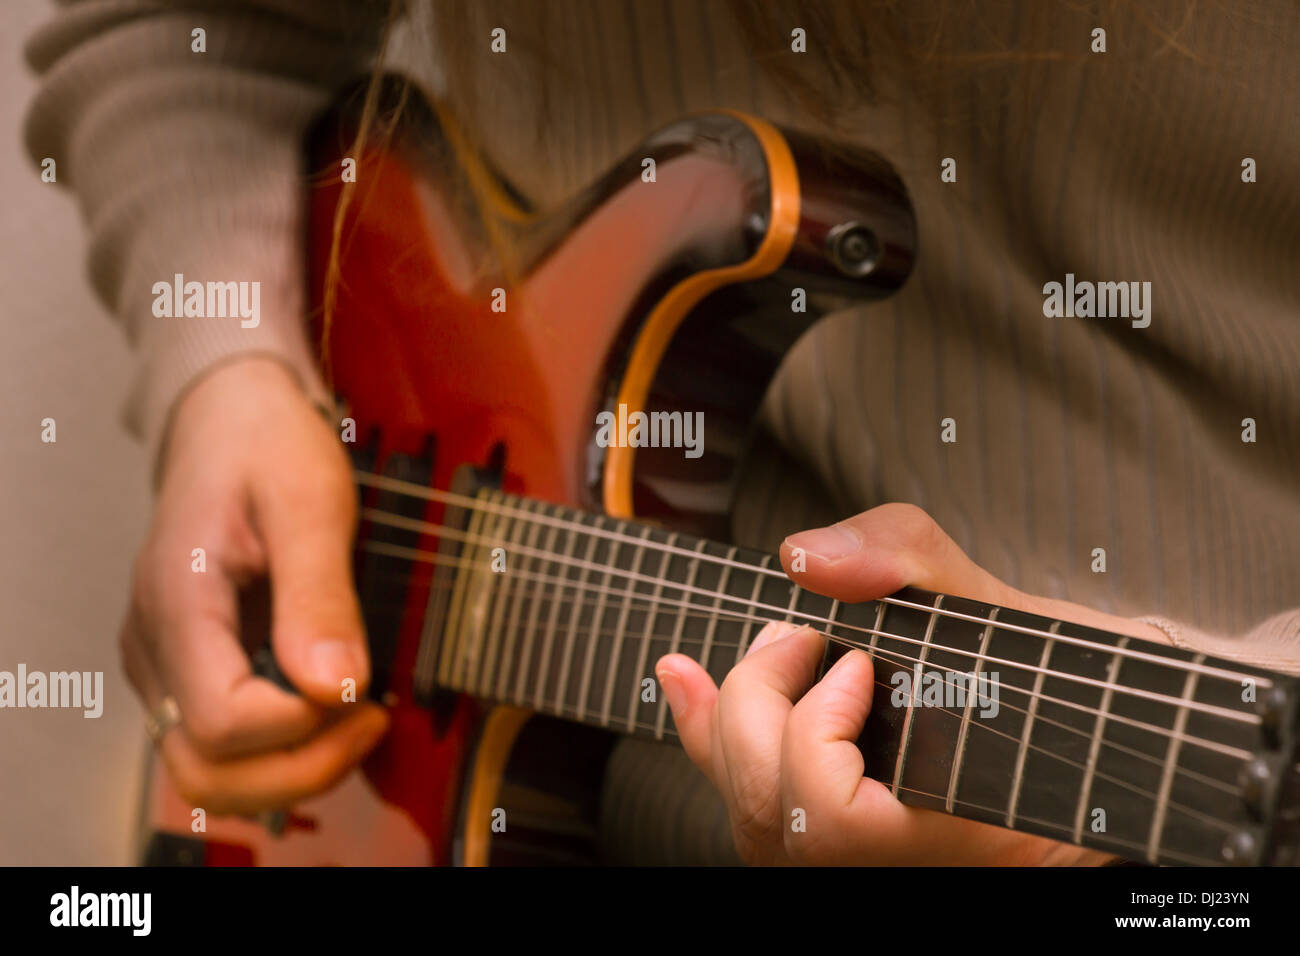 Musicien jouant une guitare électrique rouge Banque D'Images